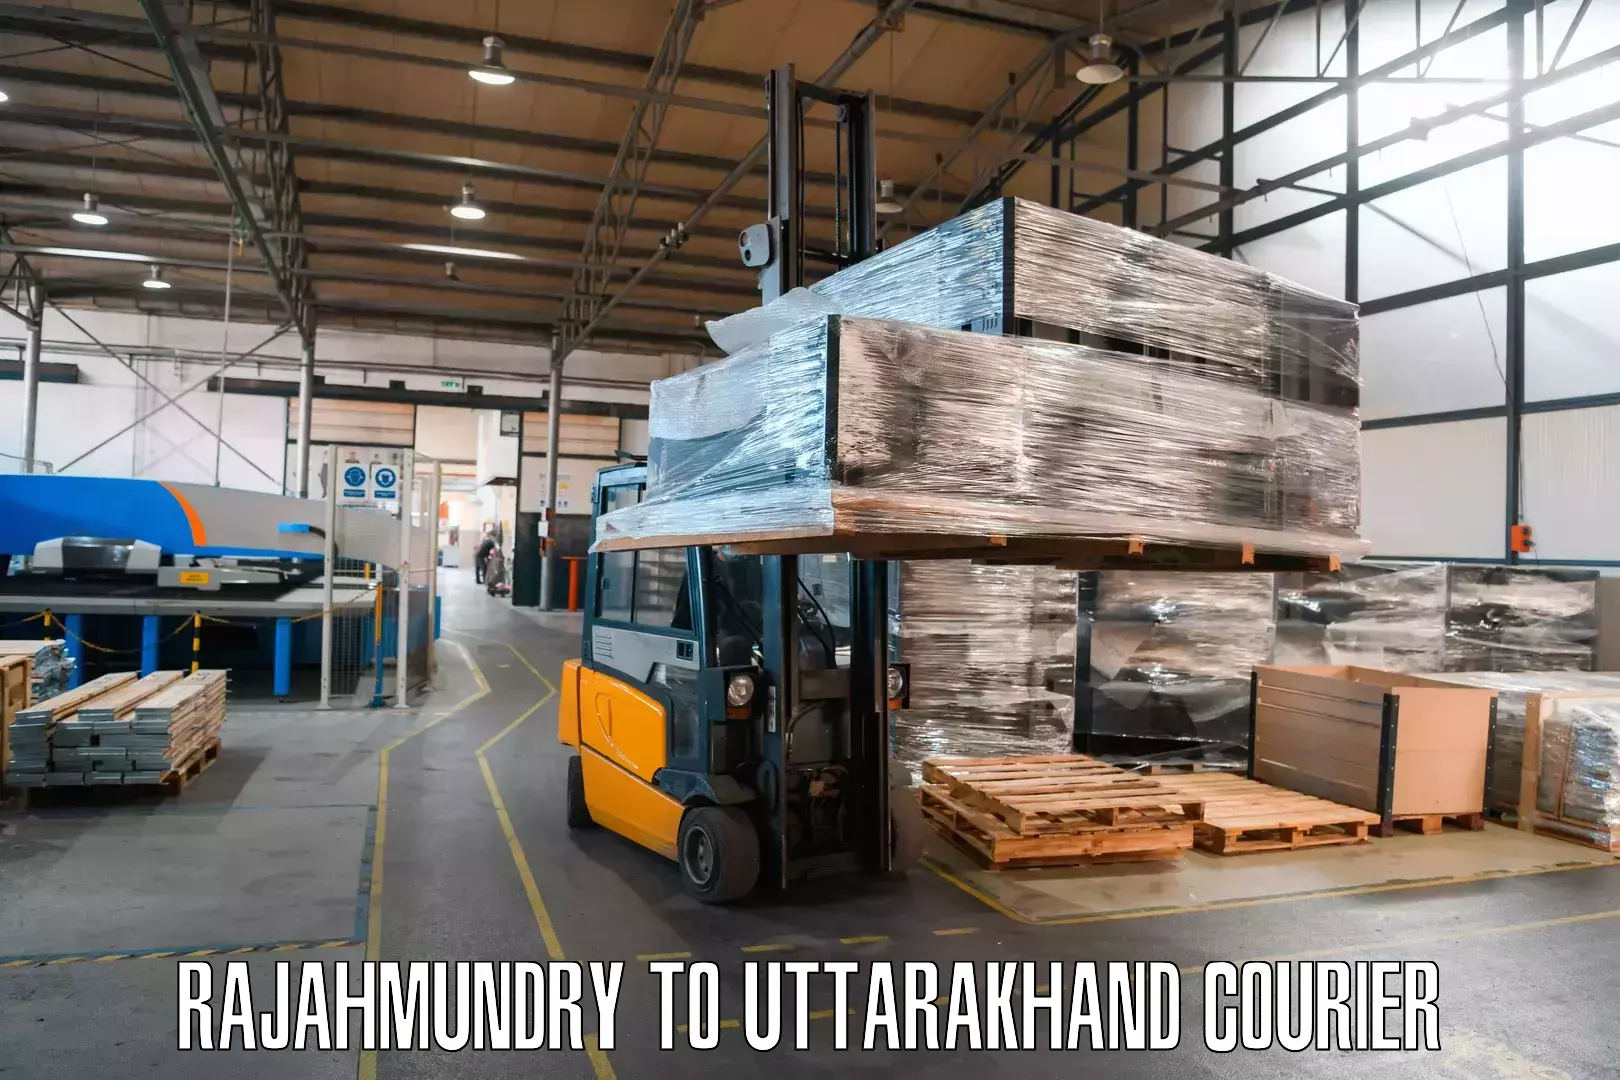 Efficient shipping platforms Rajahmundry to Pithoragarh